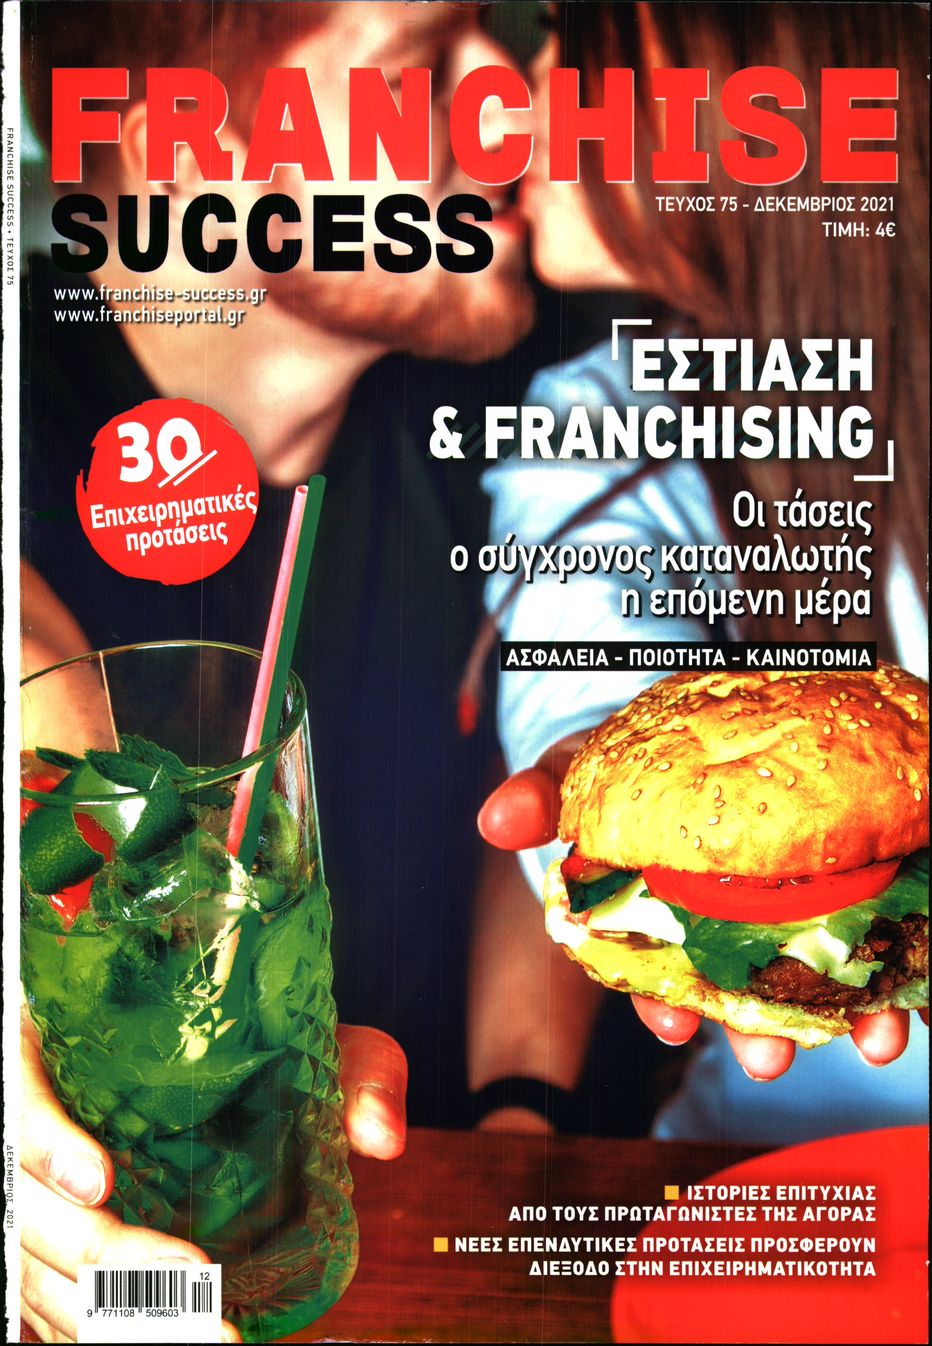 Πρωτοσέλιδο του εντύπου «FRANCHISE SUCCESS» που δημοσιεύτηκε στις 01/12/2021